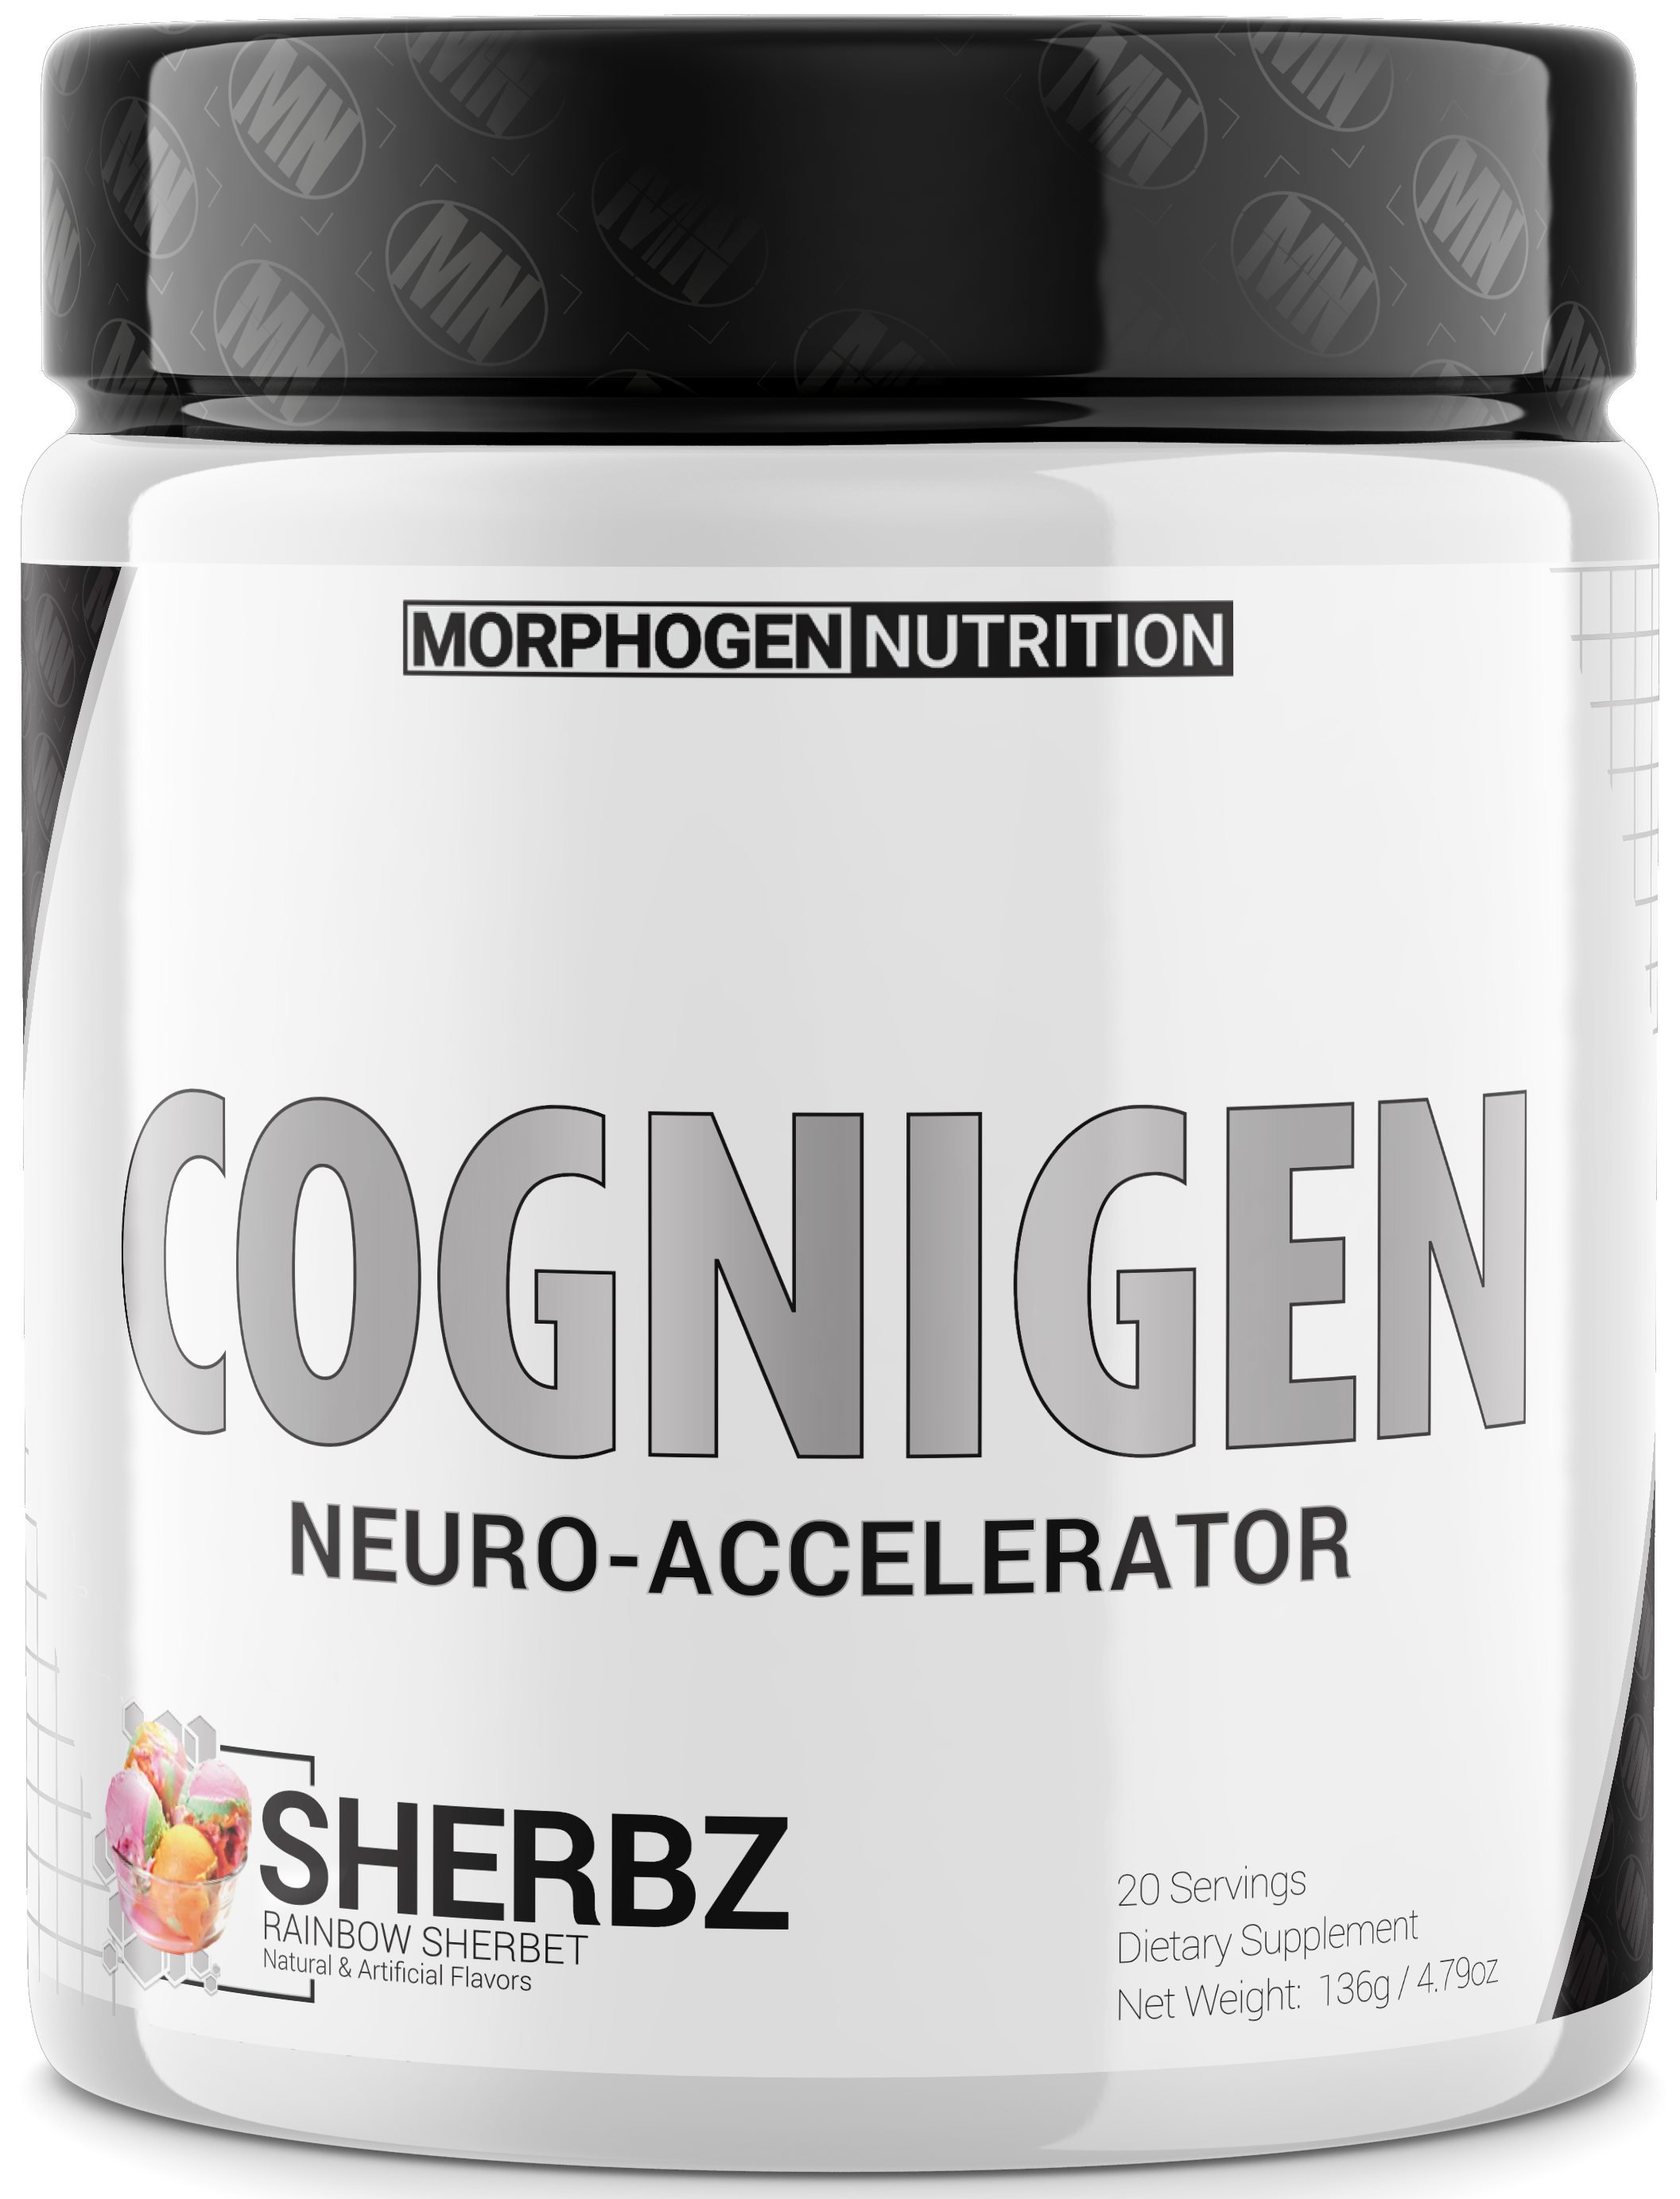 Morphogen Nutrition Cognigen